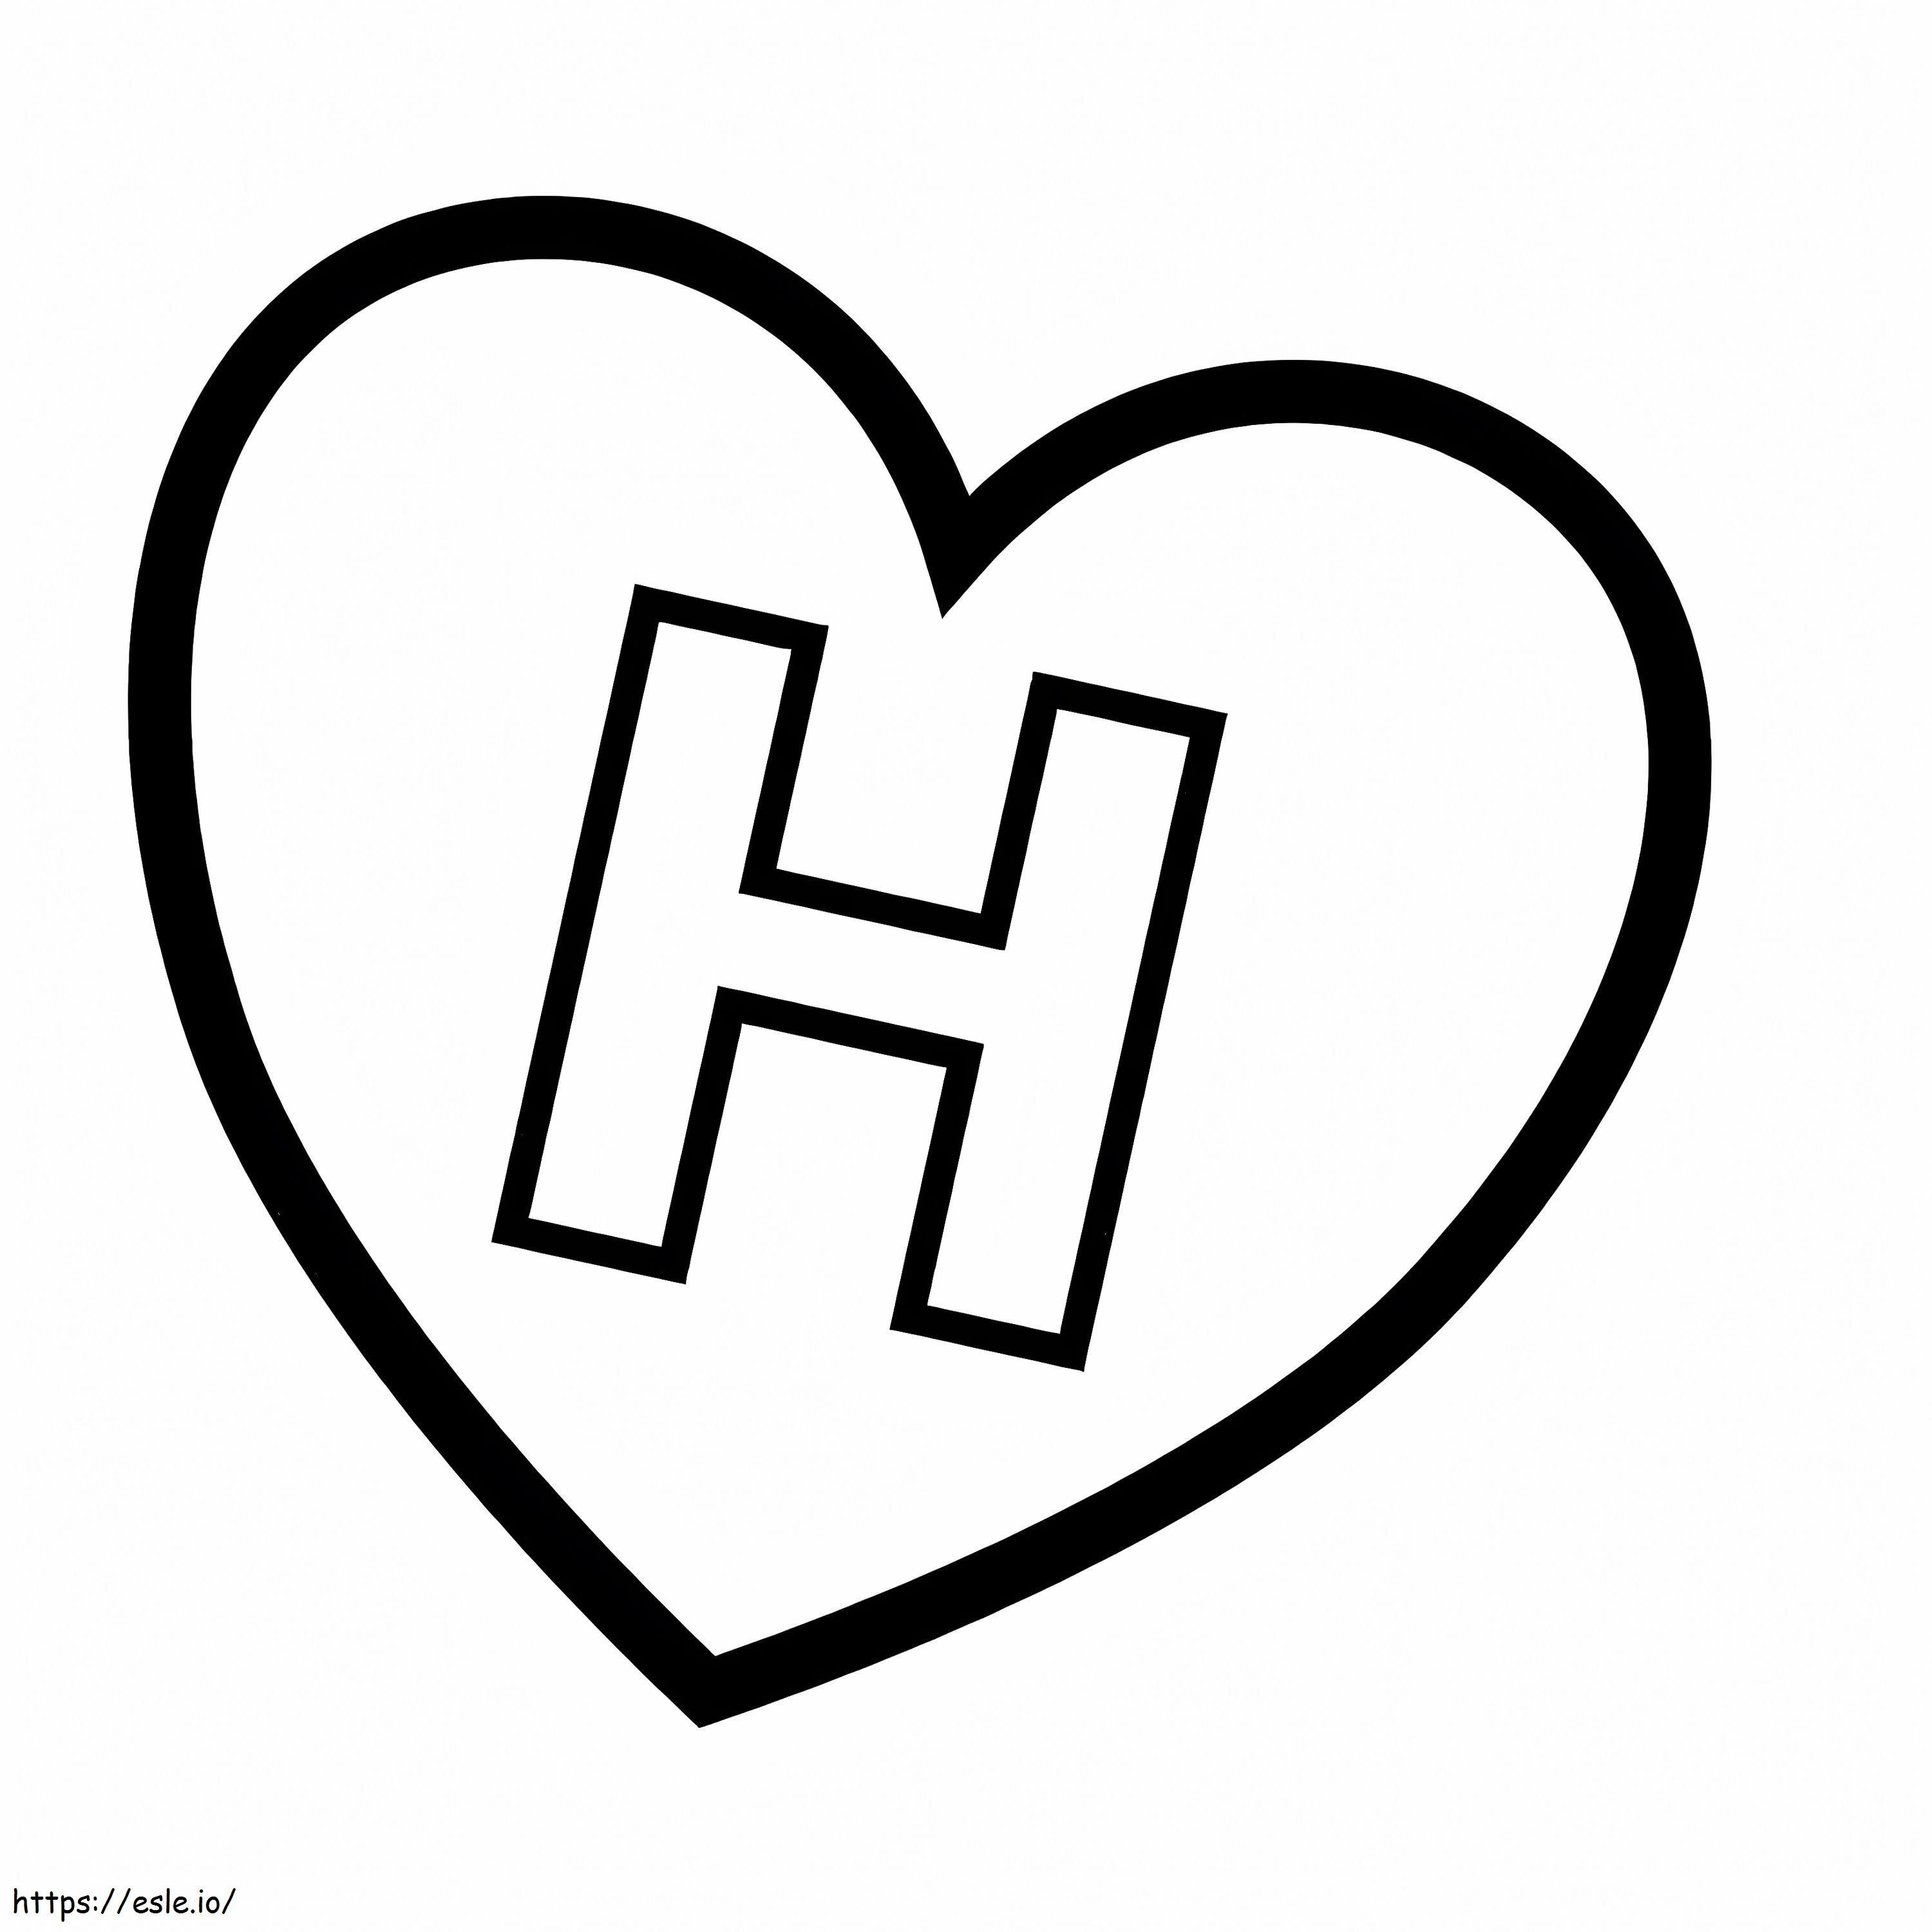 Buchstabe H im Herzen ausmalbilder